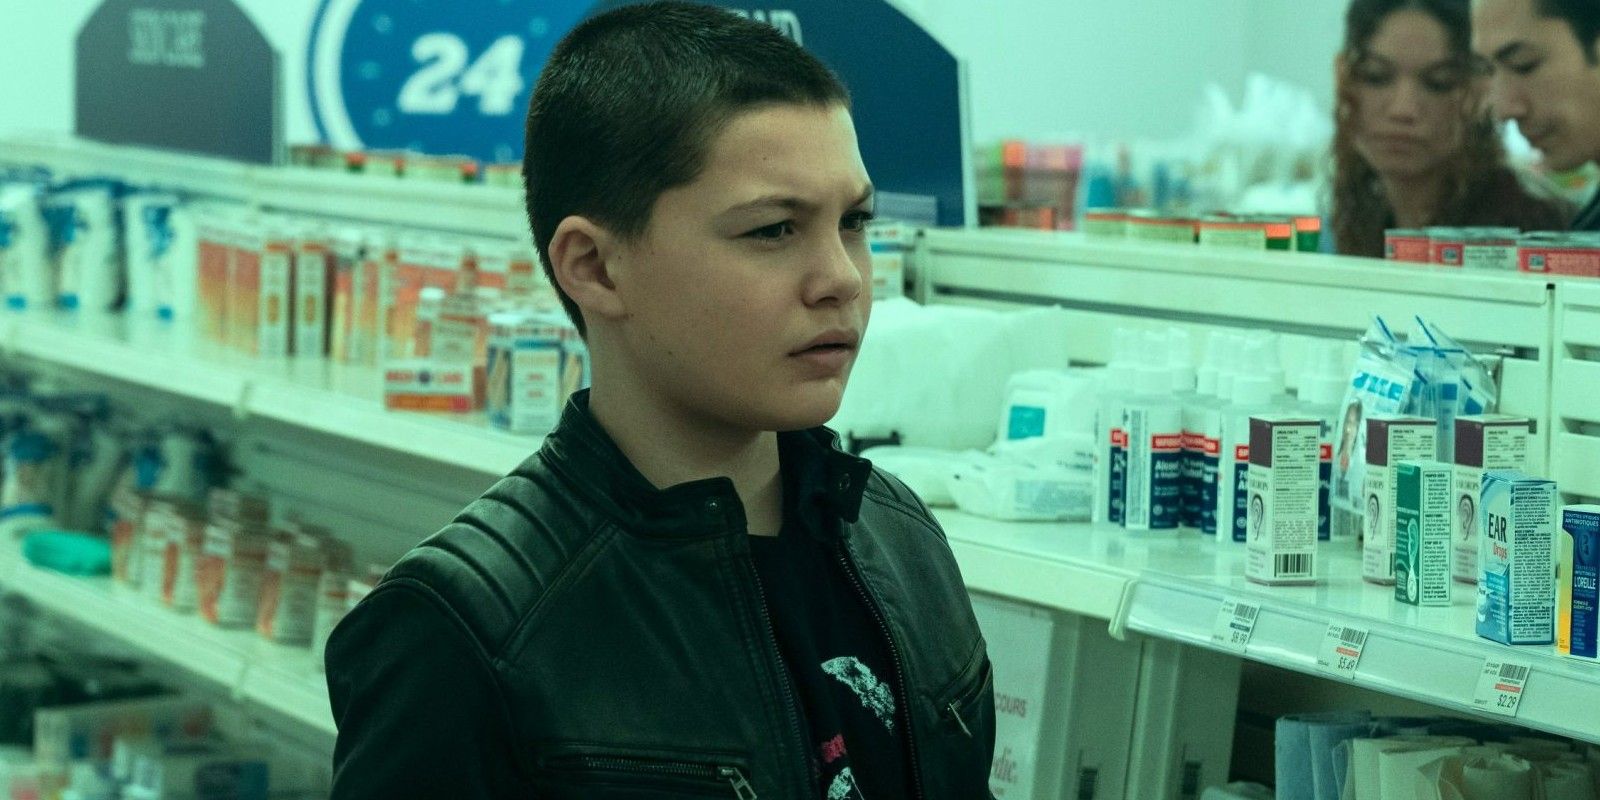 Stanley em uma farmácia na terceira temporada de Umbrella Academy